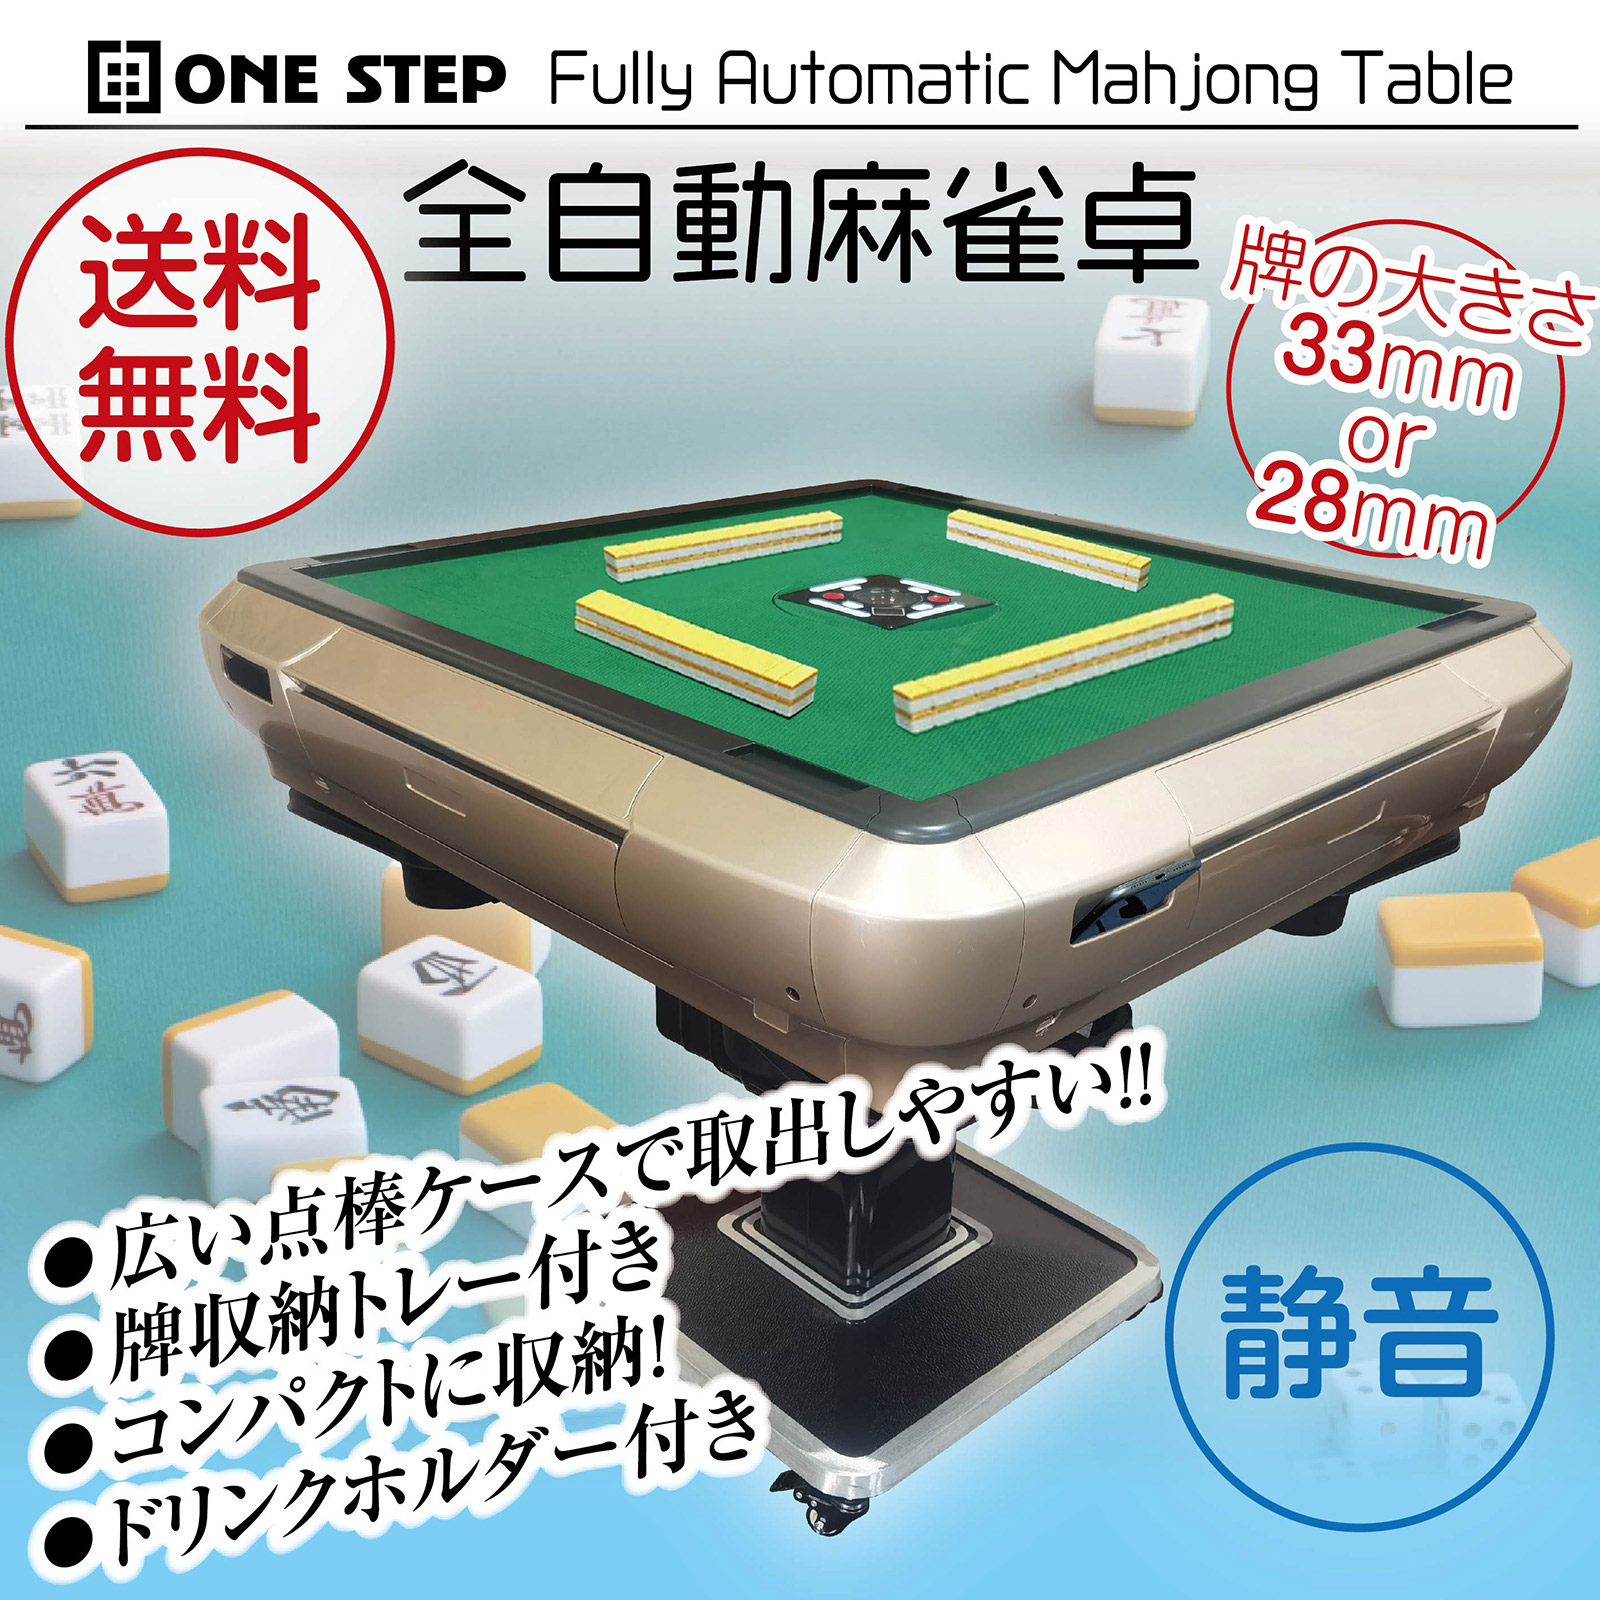 麻雀台 折りたたみ 全自動 テーブル 折り畳み式 セット :mahjong01:h2brothers 通販 